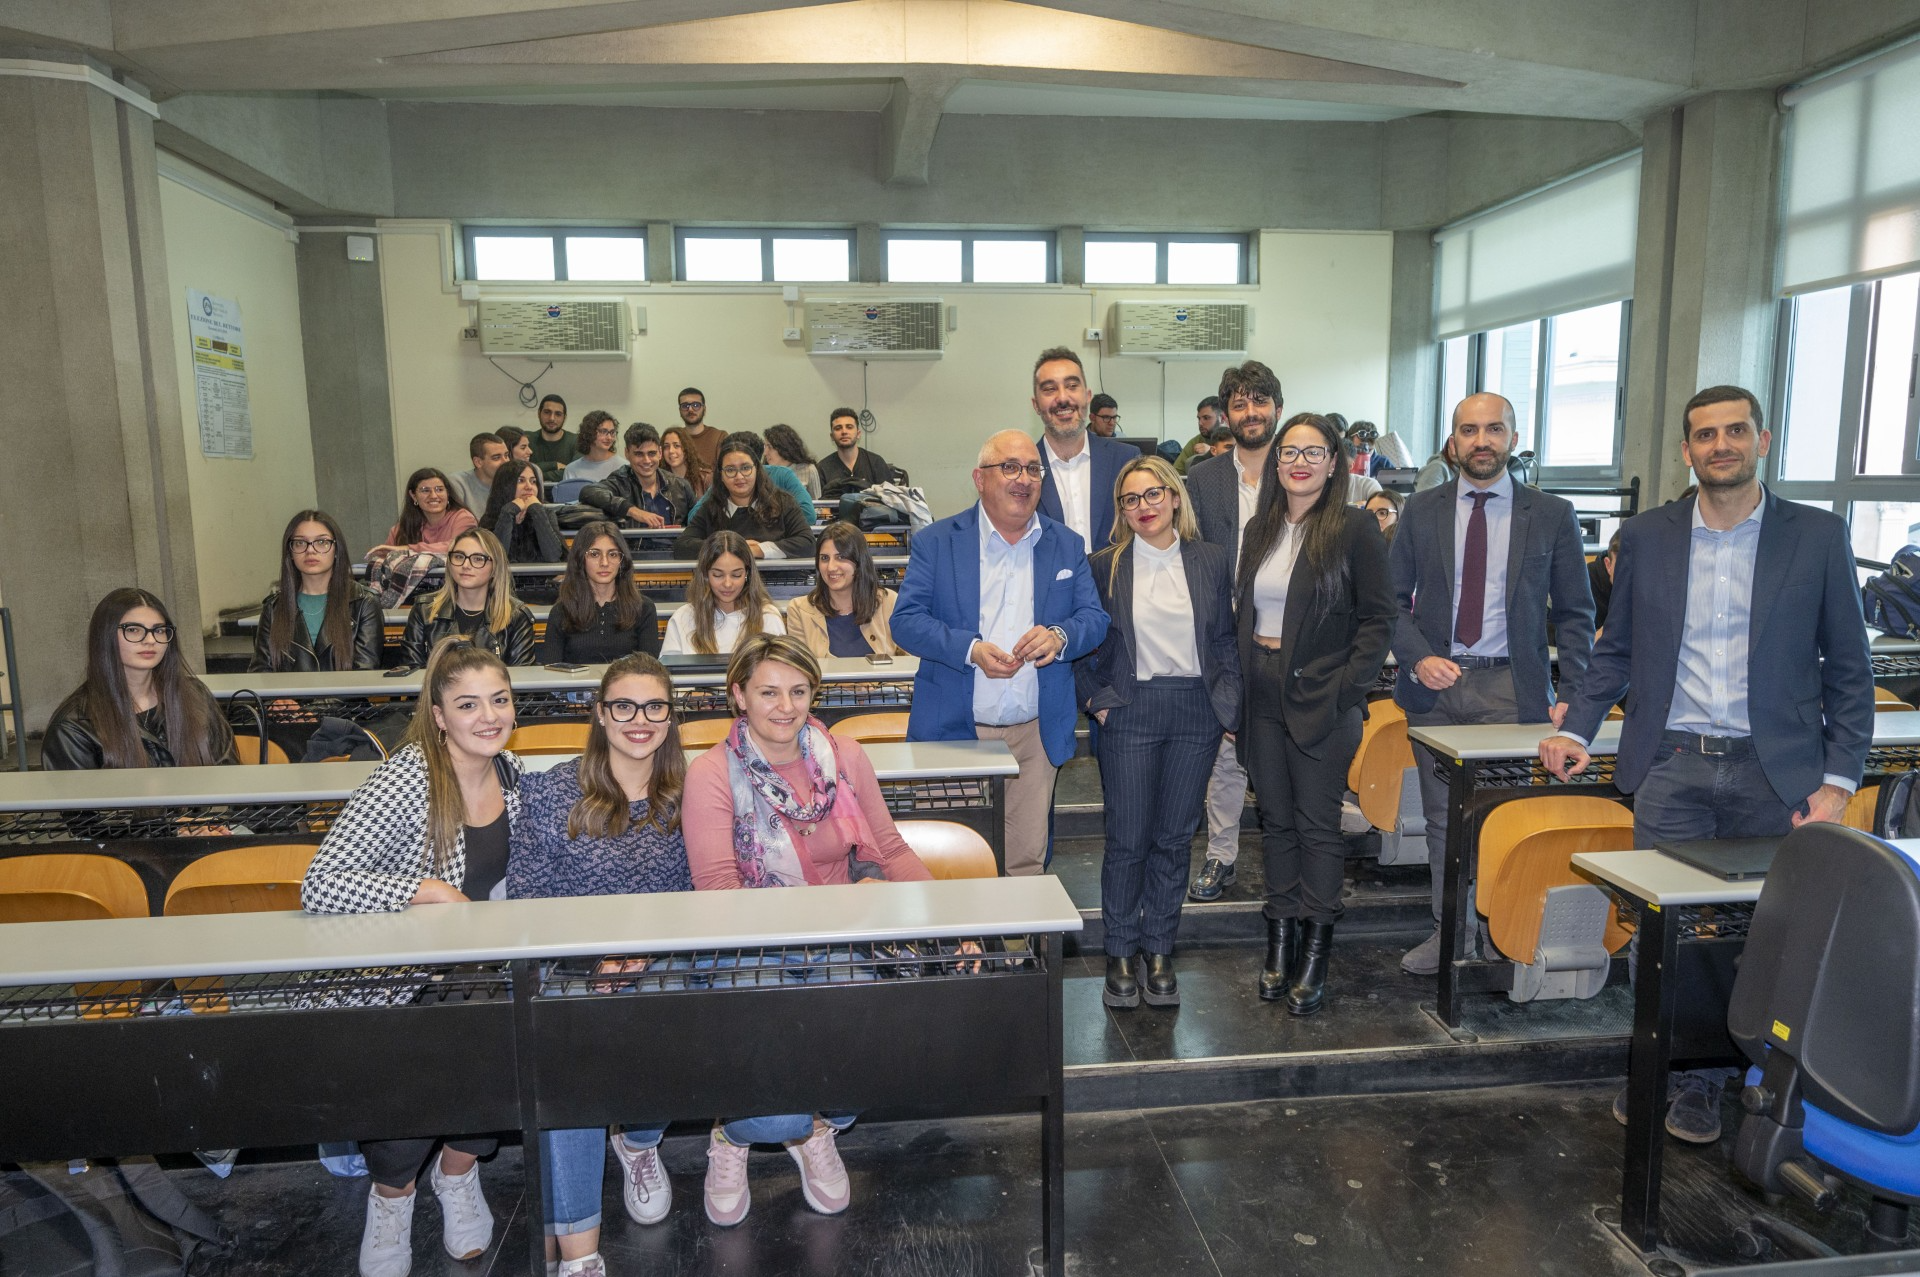 In Italia 311 miliardi di crediti deteriorati, all’Università di Messina gli studenti incontrano gli esperti